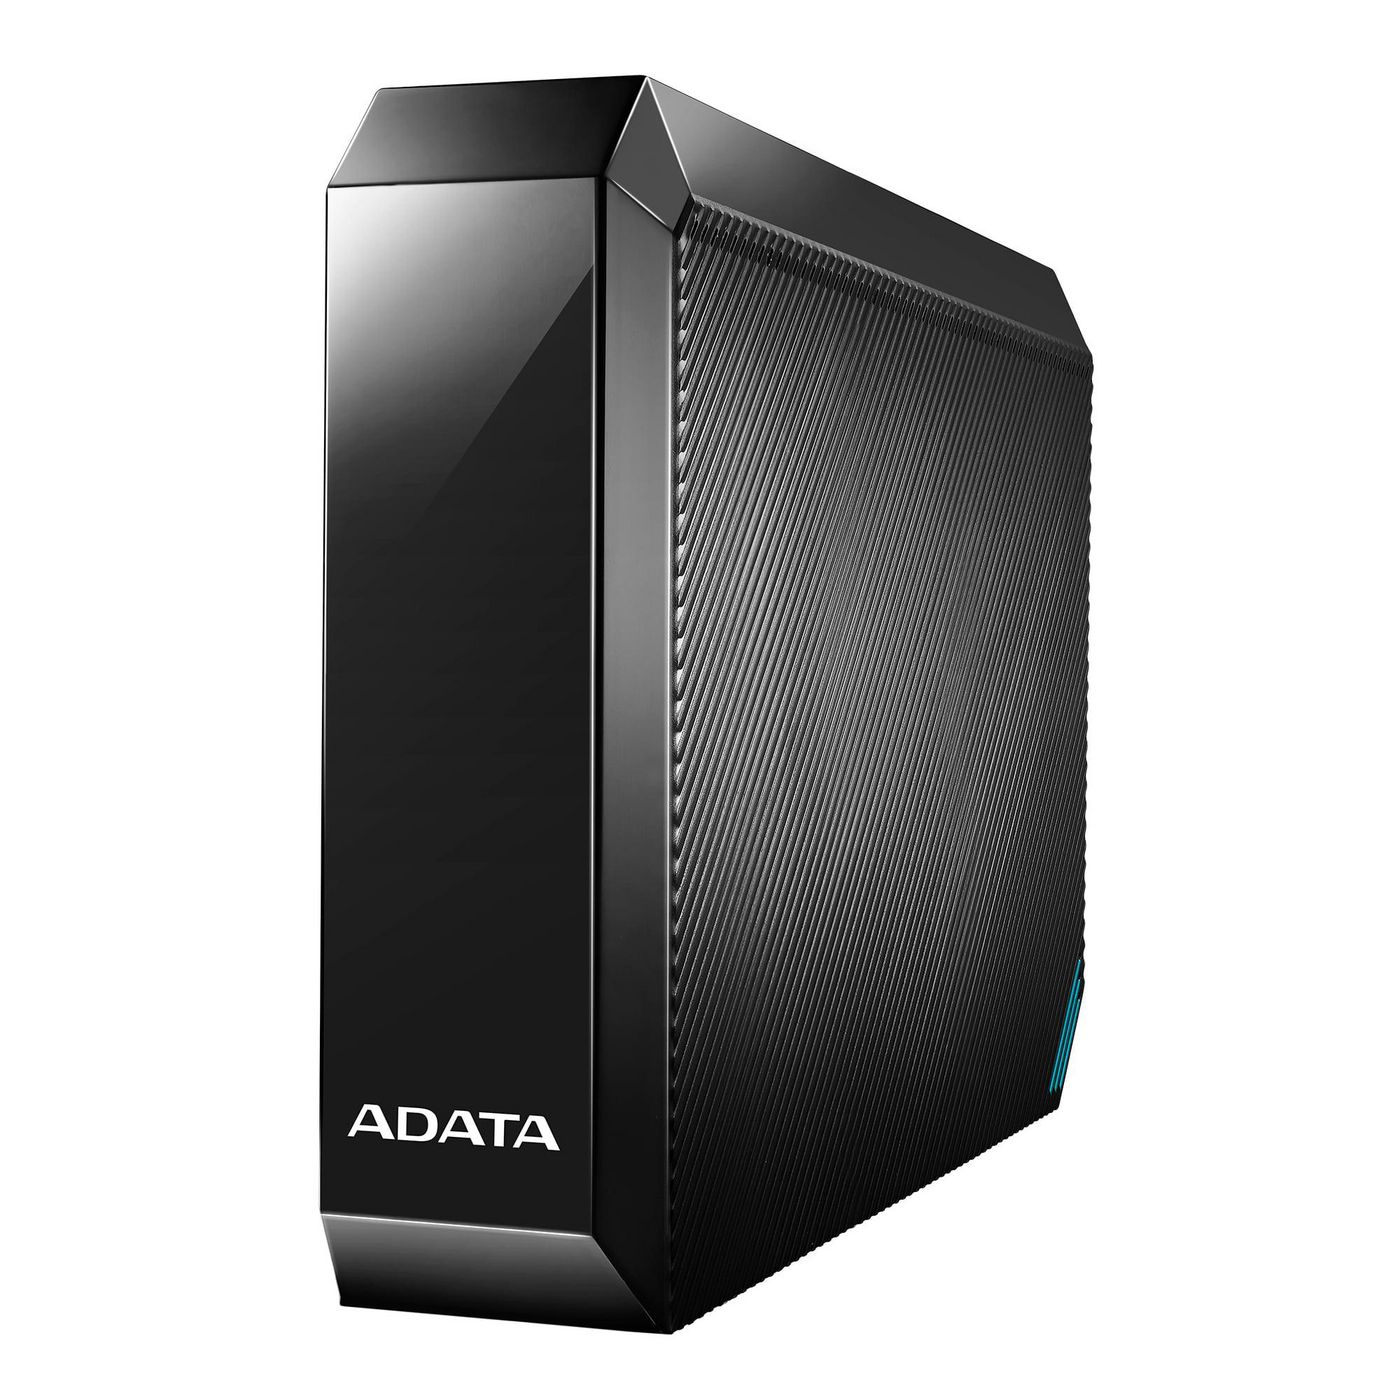 ADATA AHM800-8TU32G1-CUKBK W125977300 HM800 3.5 External HDD 8TB, 